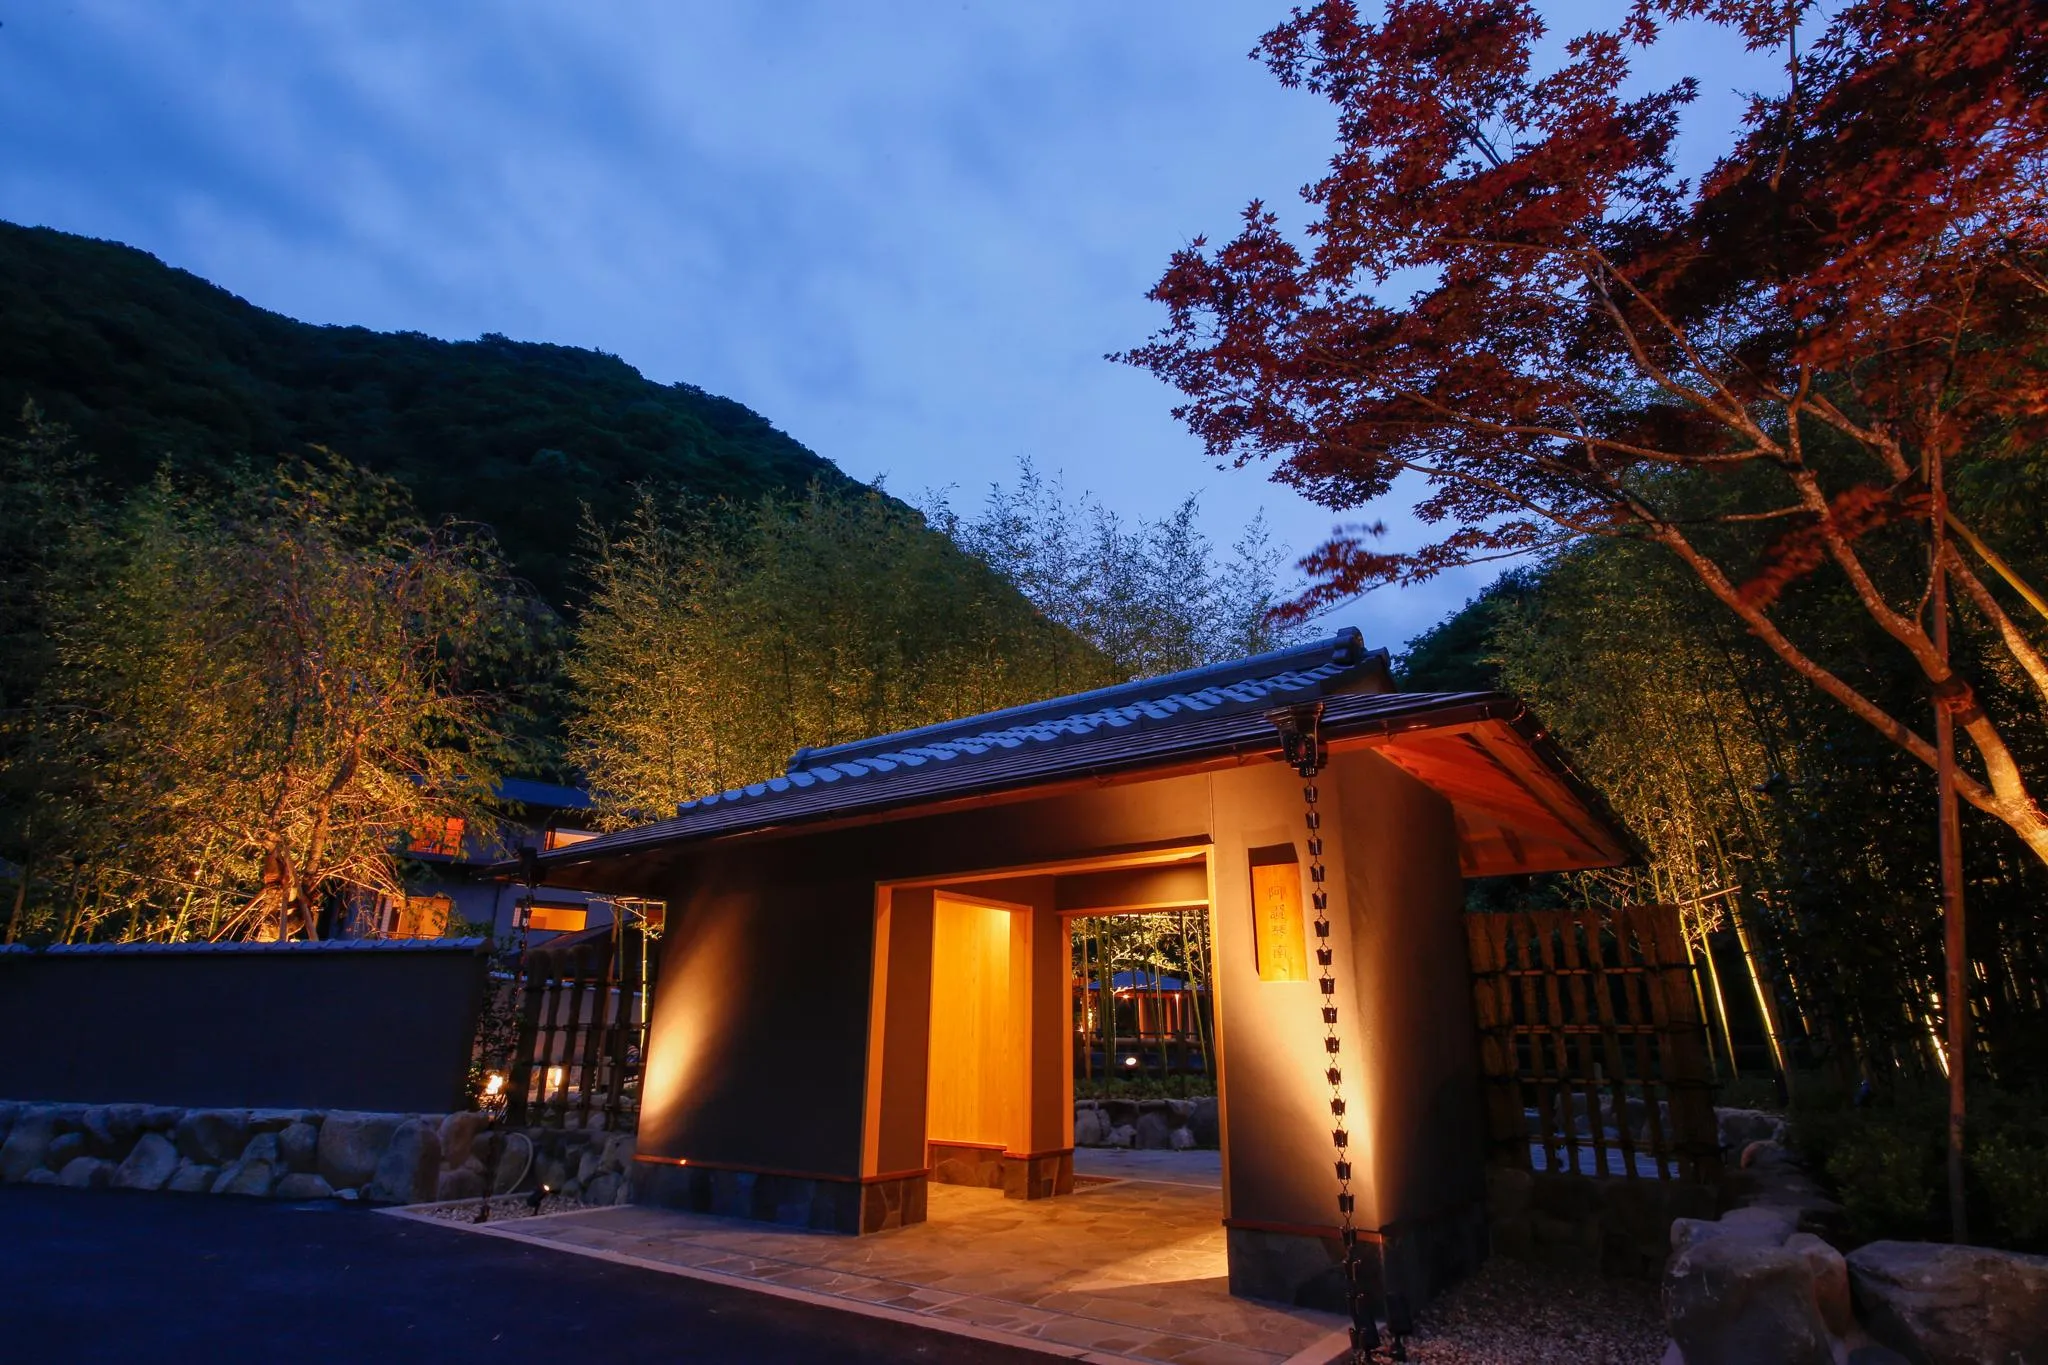 香川県で人気のホテル 旅館 23年 宿泊予約はrelux